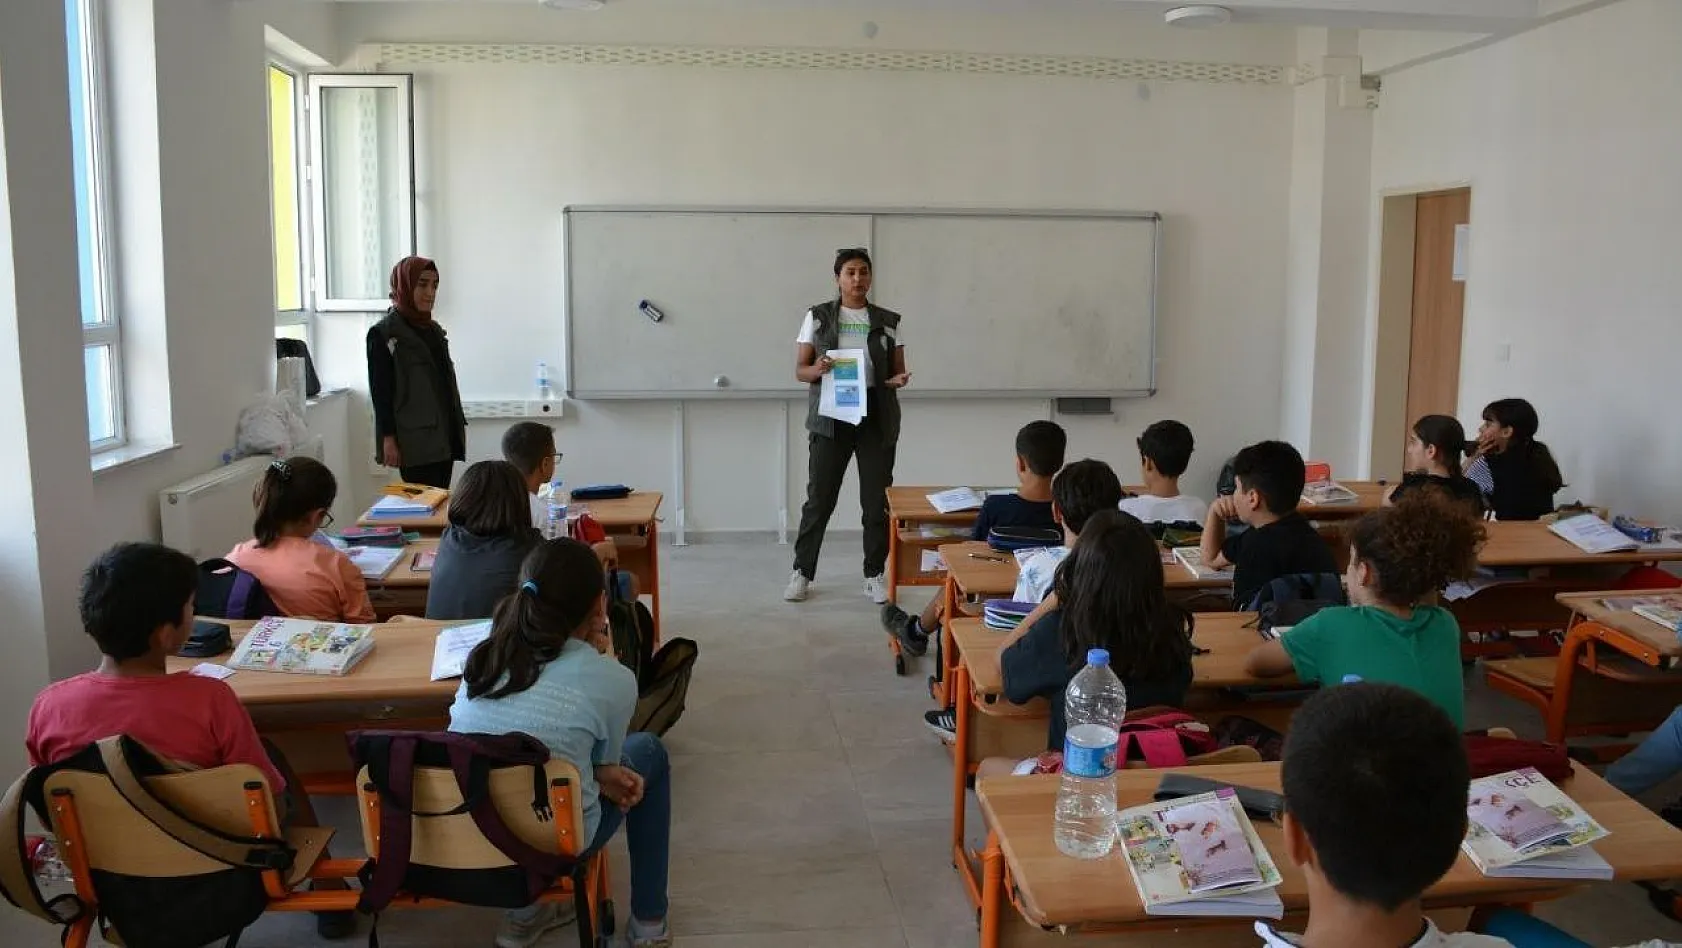 Tunceli'de öğrencilere yaban hayatı eğitimi